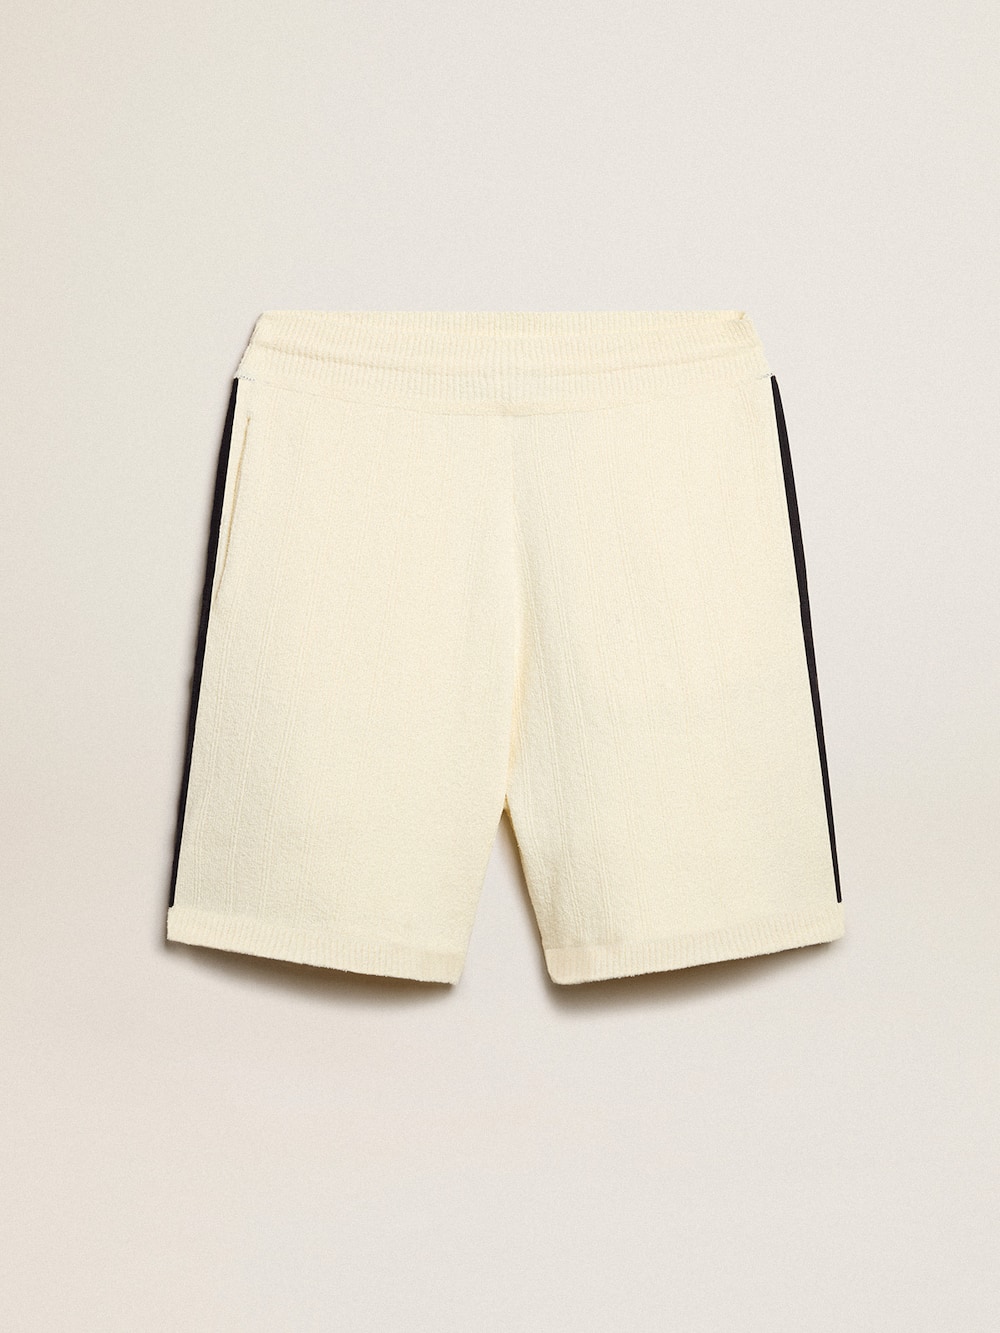 Golden Goose - Pantaloncini da uomo di colore bianco antico con costine blu sui lati in 